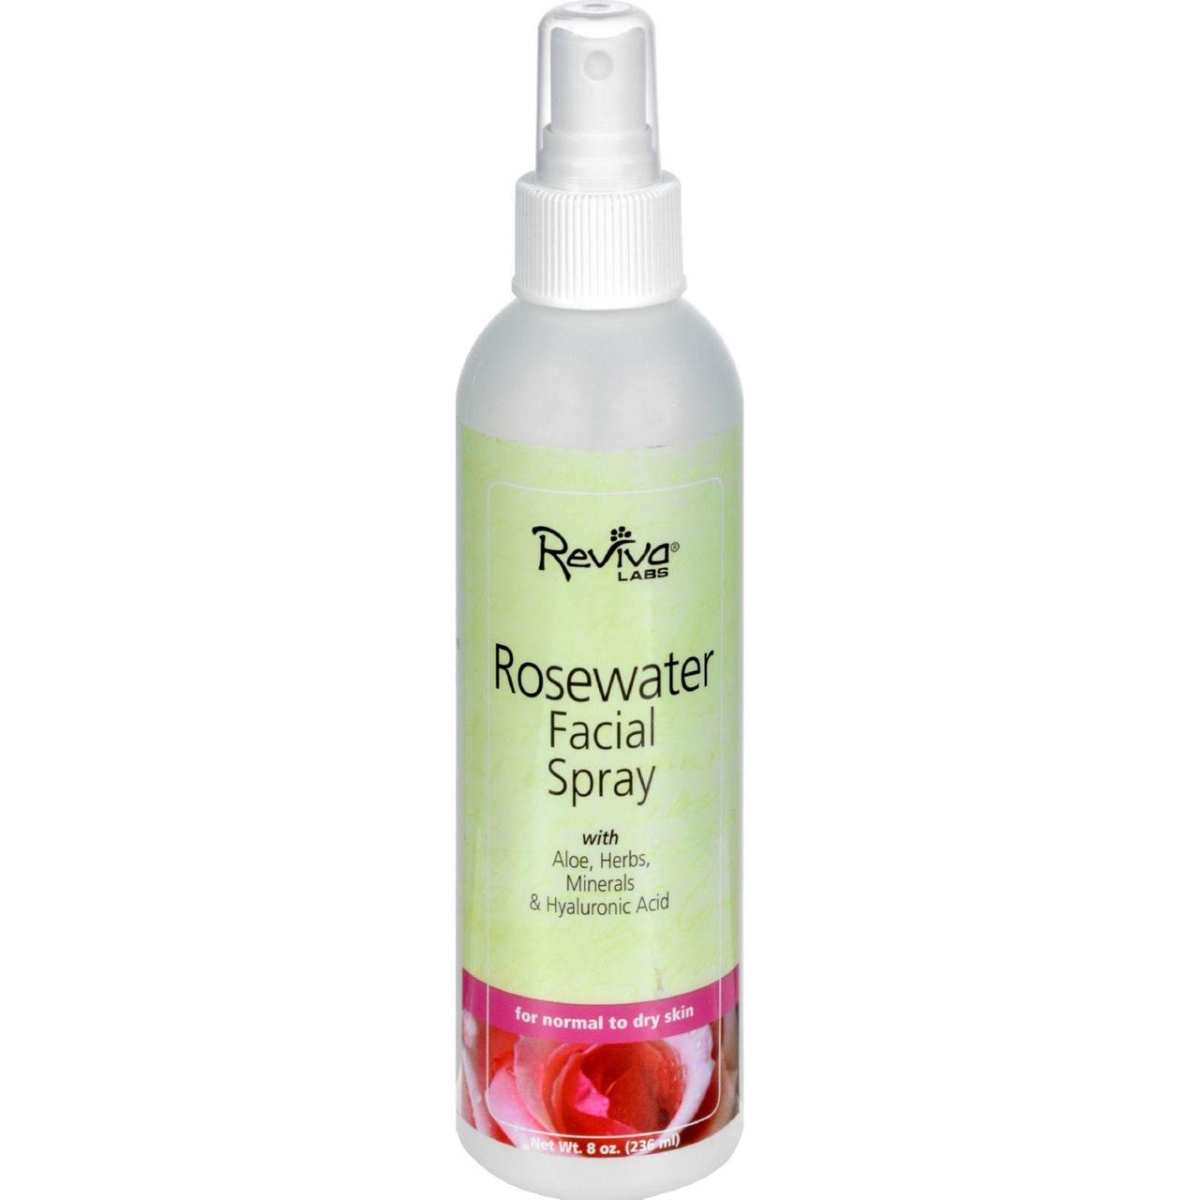 Hg0654350 8 Fl Oz Facial Spray Rosewater